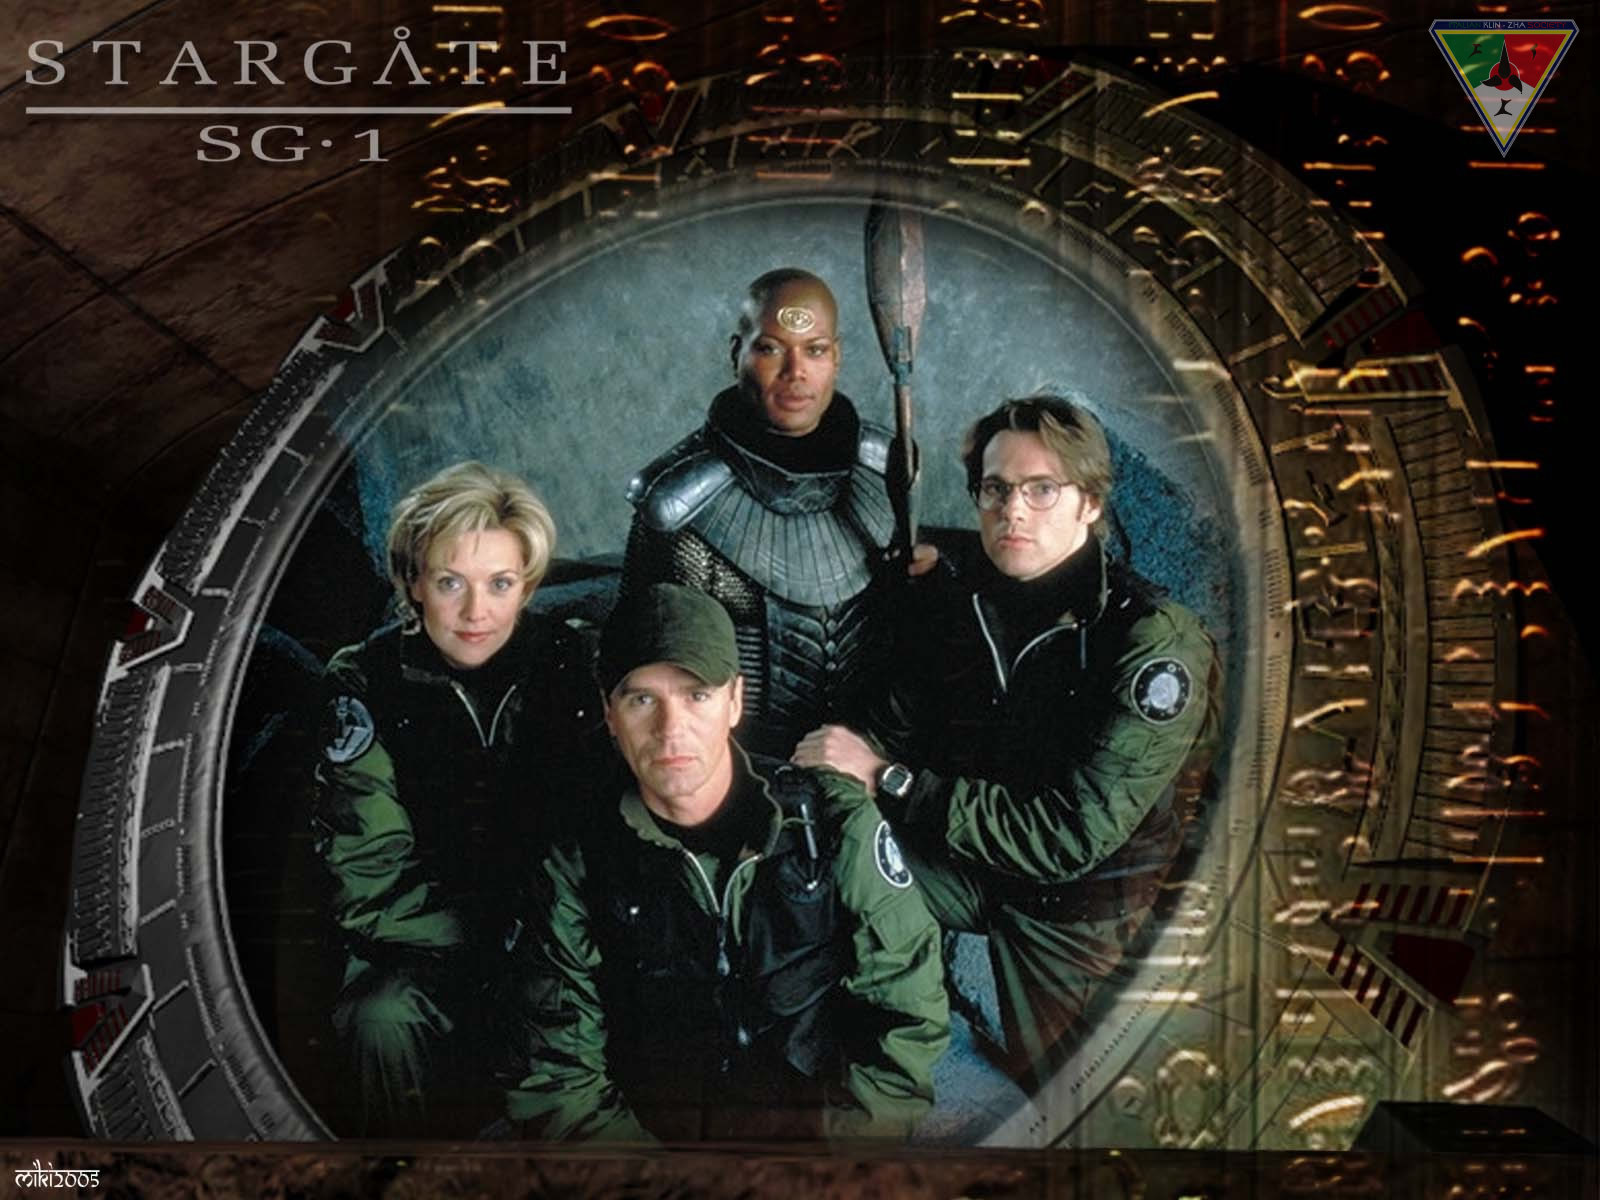 Stargate sg 1. Звёздные врата: SG-1 200. Звёздные врата sg1 (зв1 первый отряд)1 фотографии.